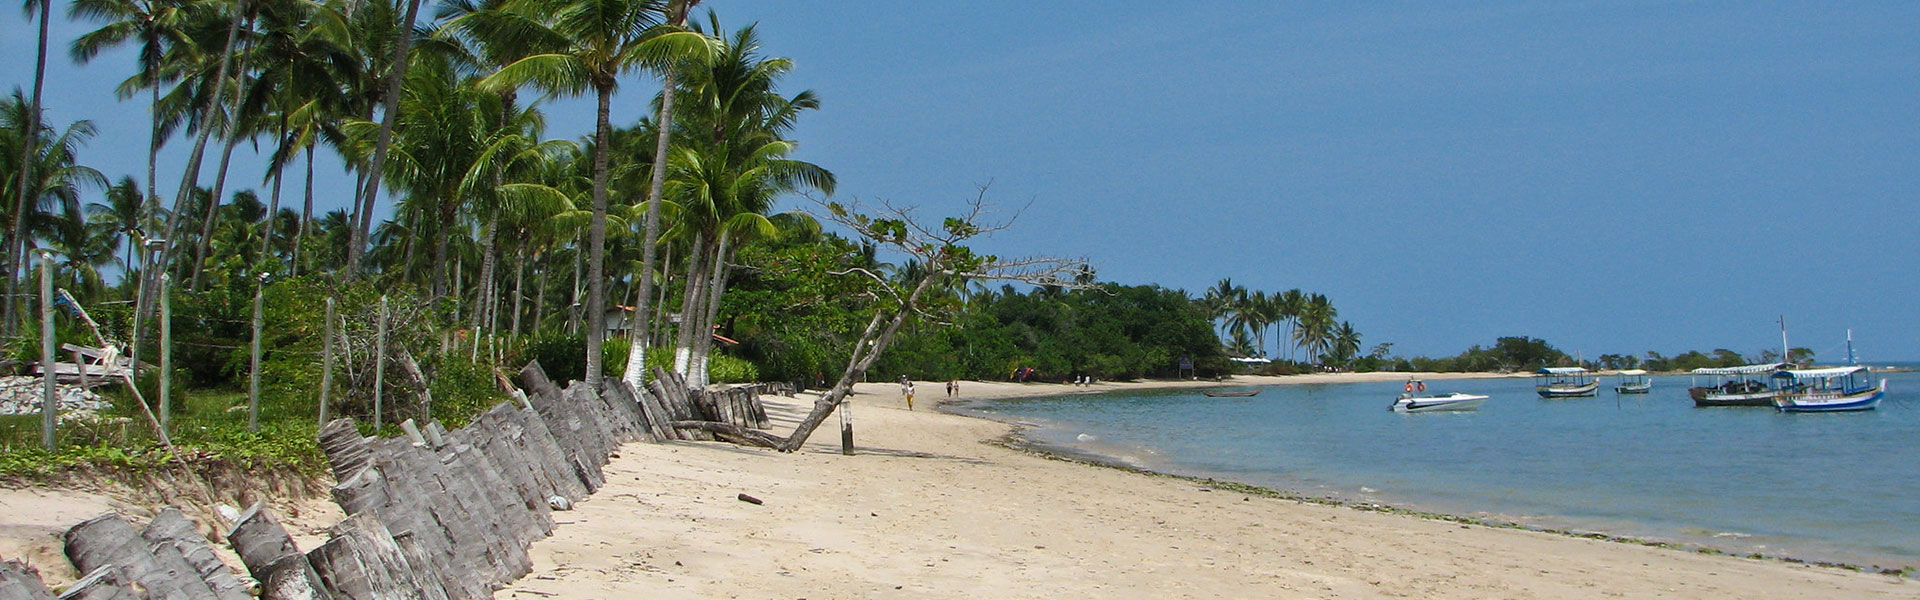 10 praias para conhecer na Bahia